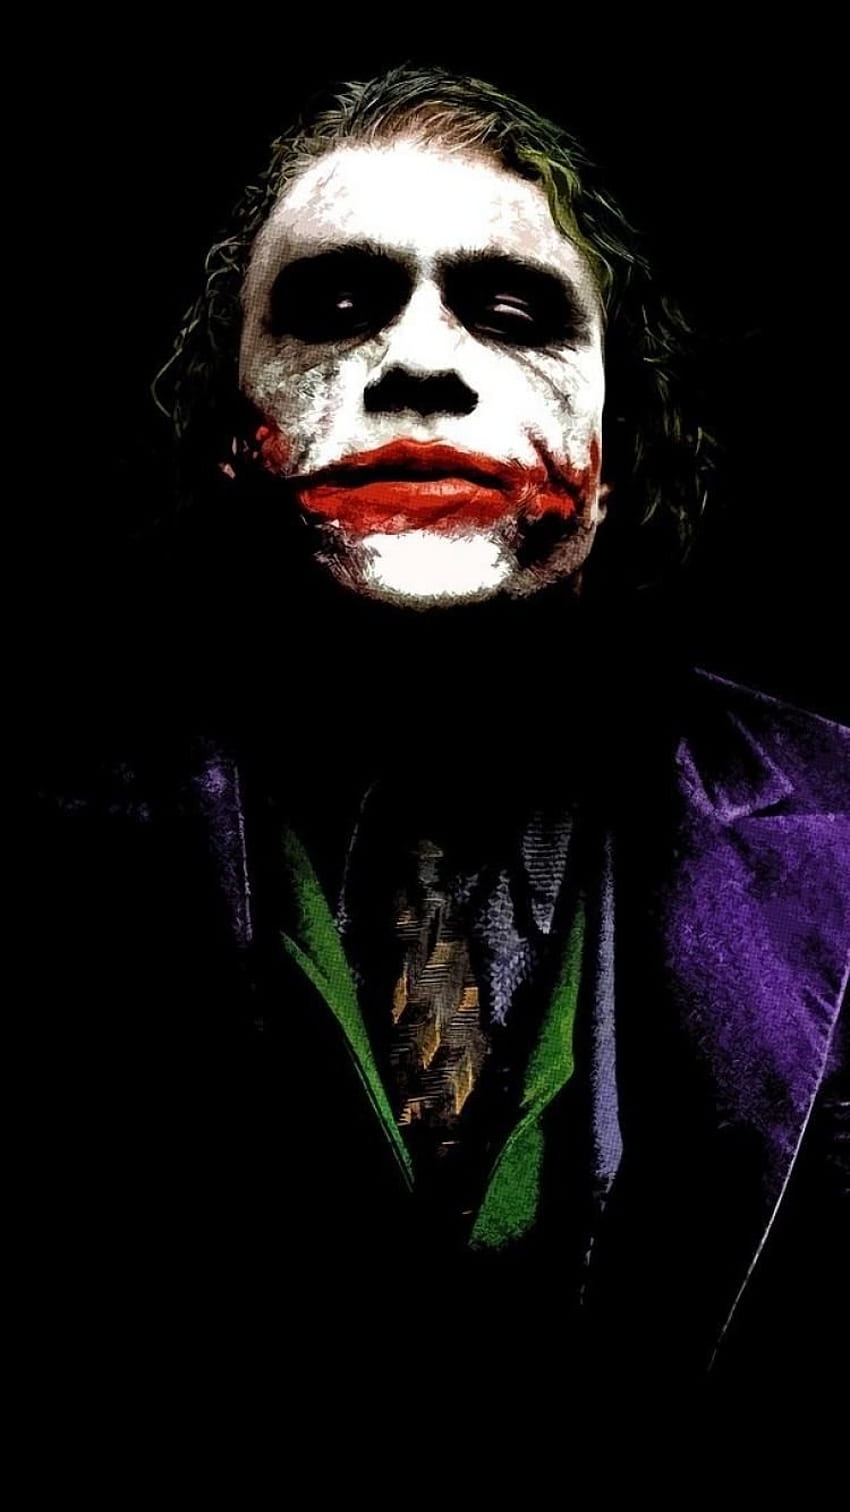 3840x2160px, 4K Free download | Dark Knight Joker iPhone 6 - Best Dark ...